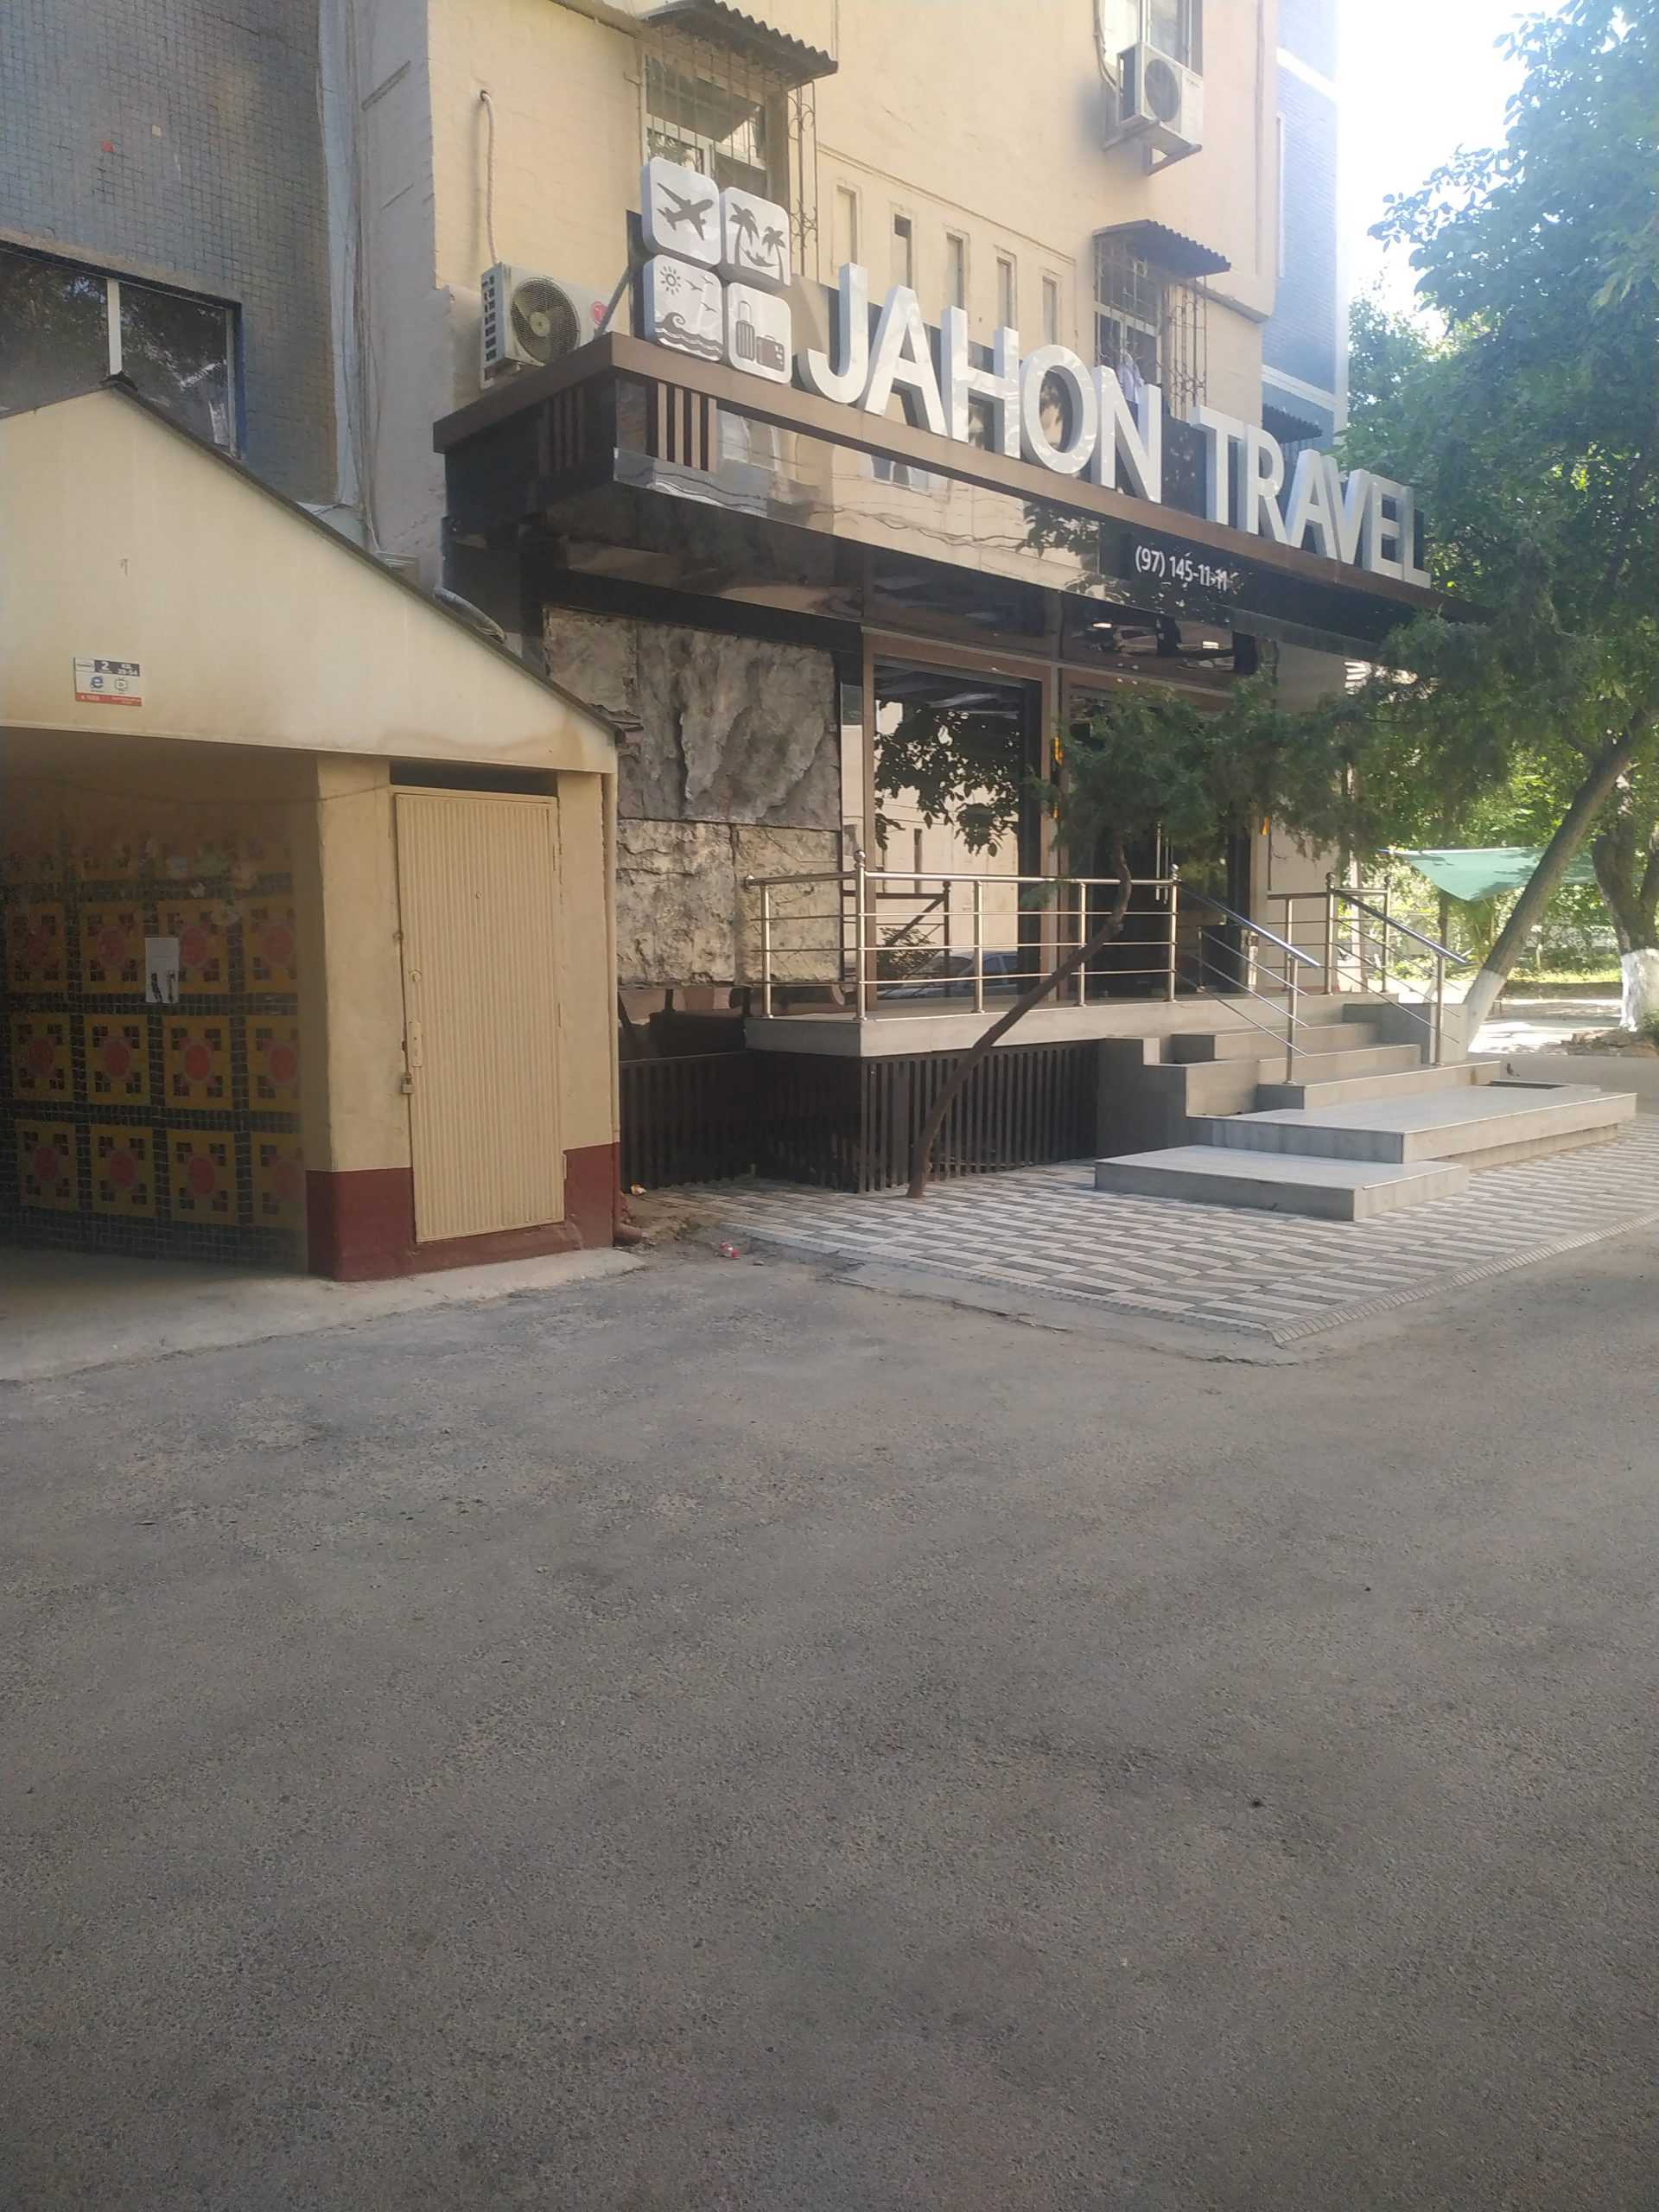 туристическая компания Jahon travel фото 1